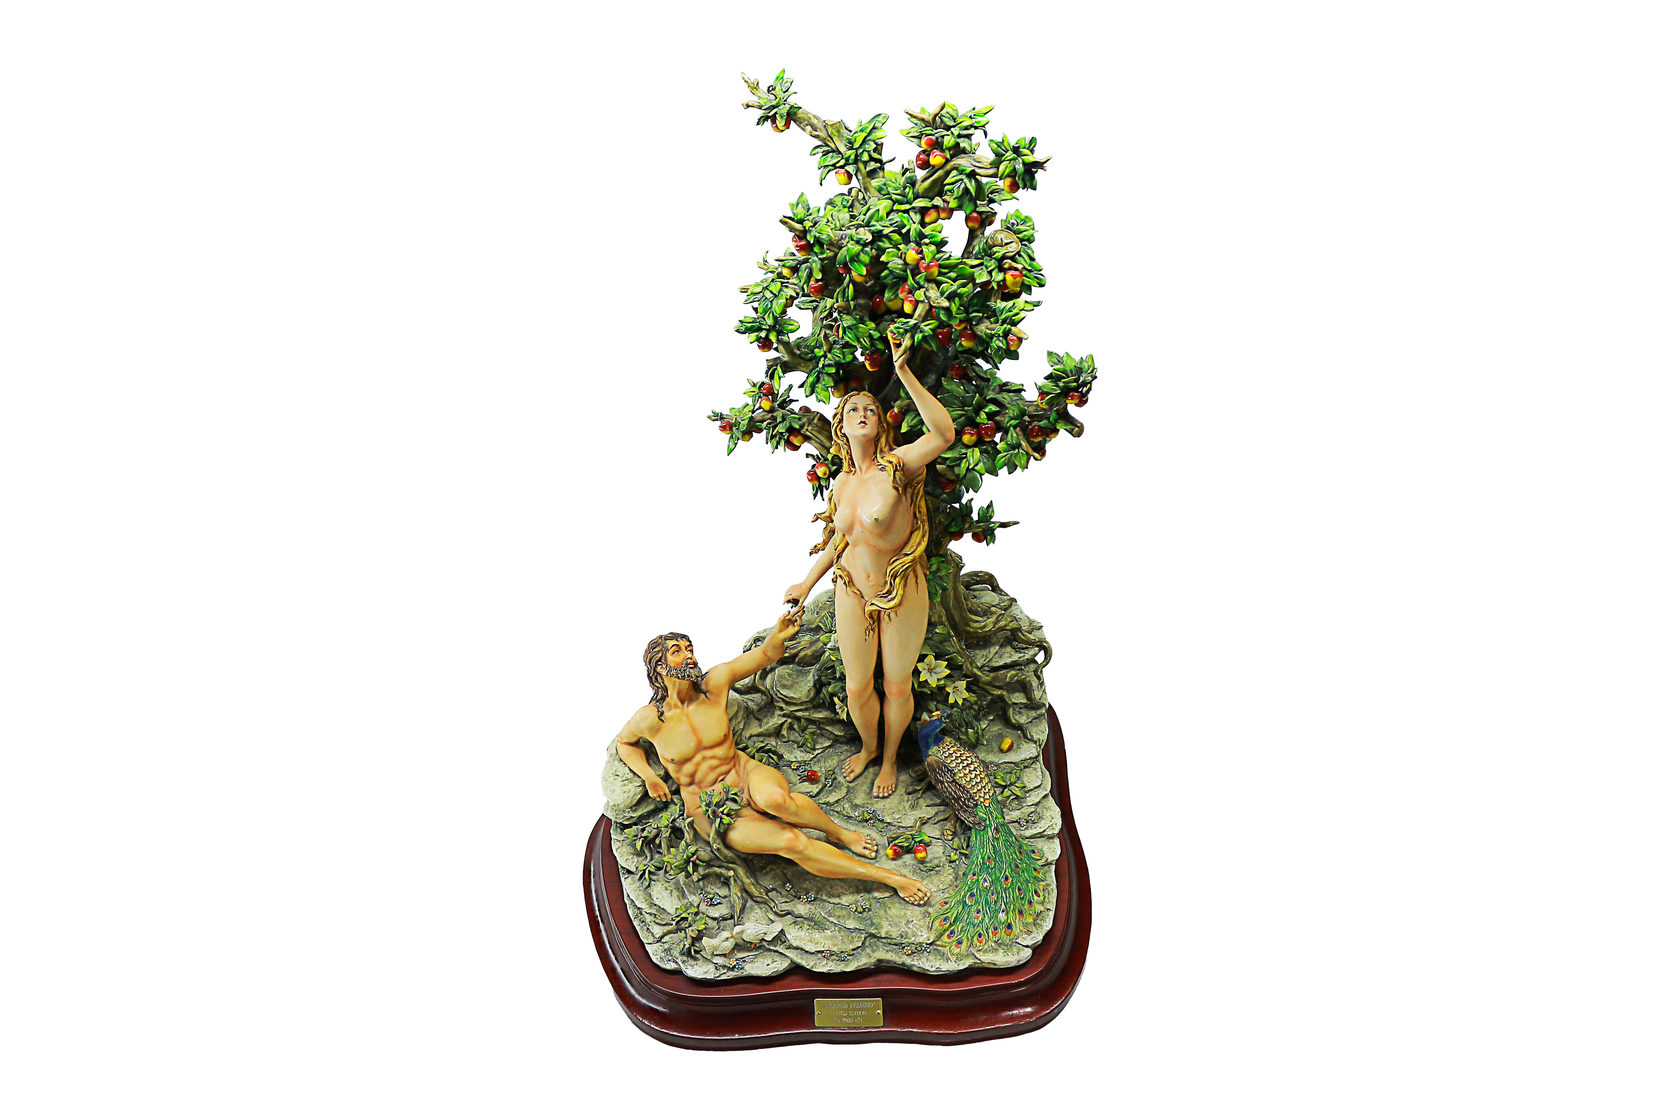 Стильная и элегантная фигура с кашпо, воссоздающая образы Адама и Евы